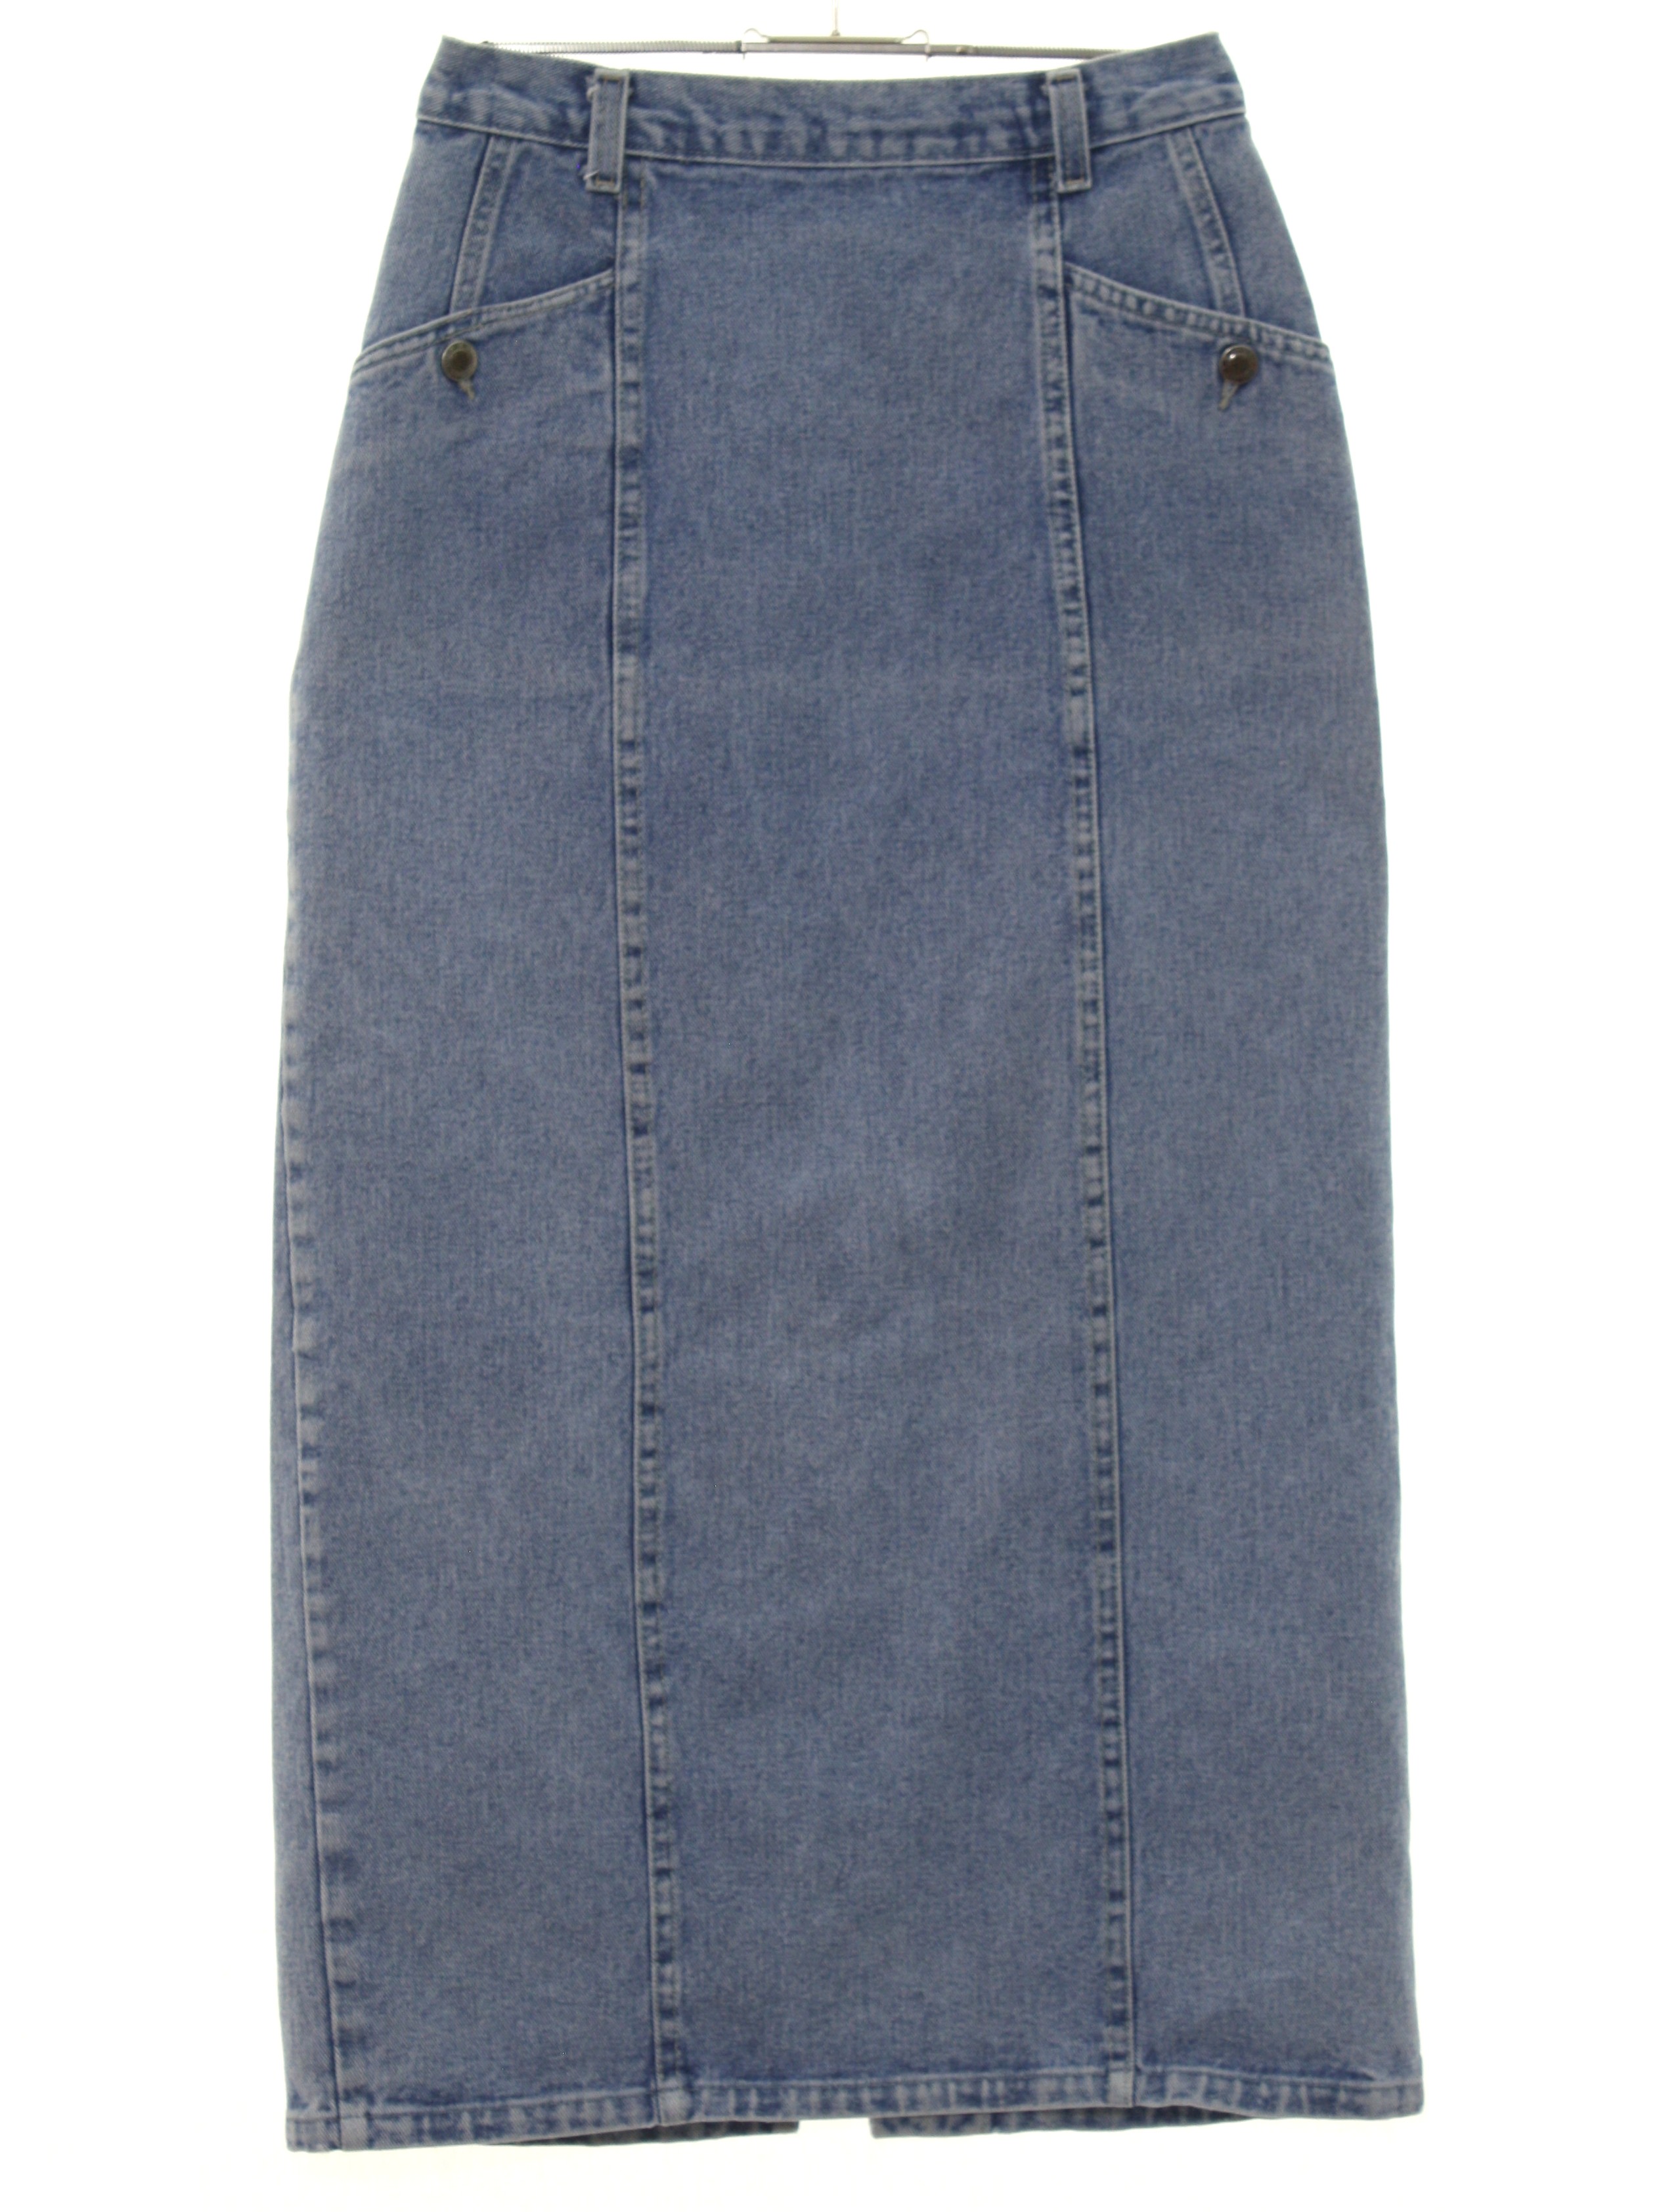 90s Skirt (St. Johns Bay): 90s or Newer -St. Johns Bay- Womens light ...